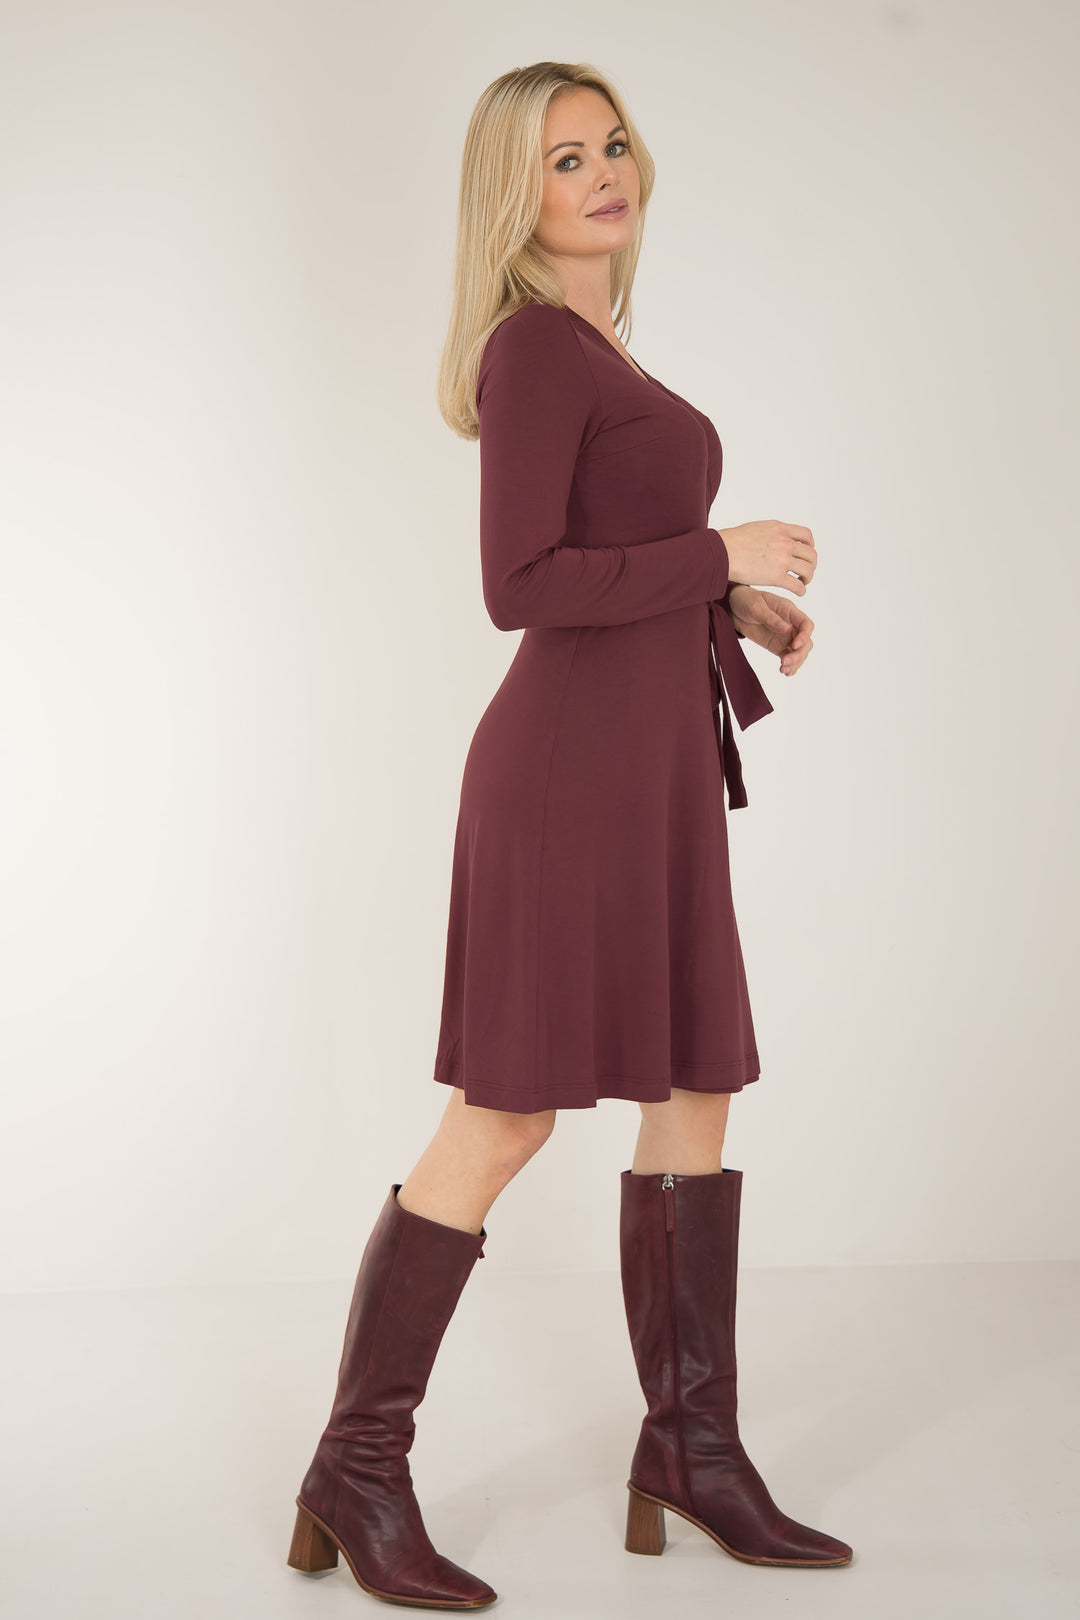 Bestie short wrap jersey dress - Burgundy - Knälång, brunröd omlottklänning i trikå